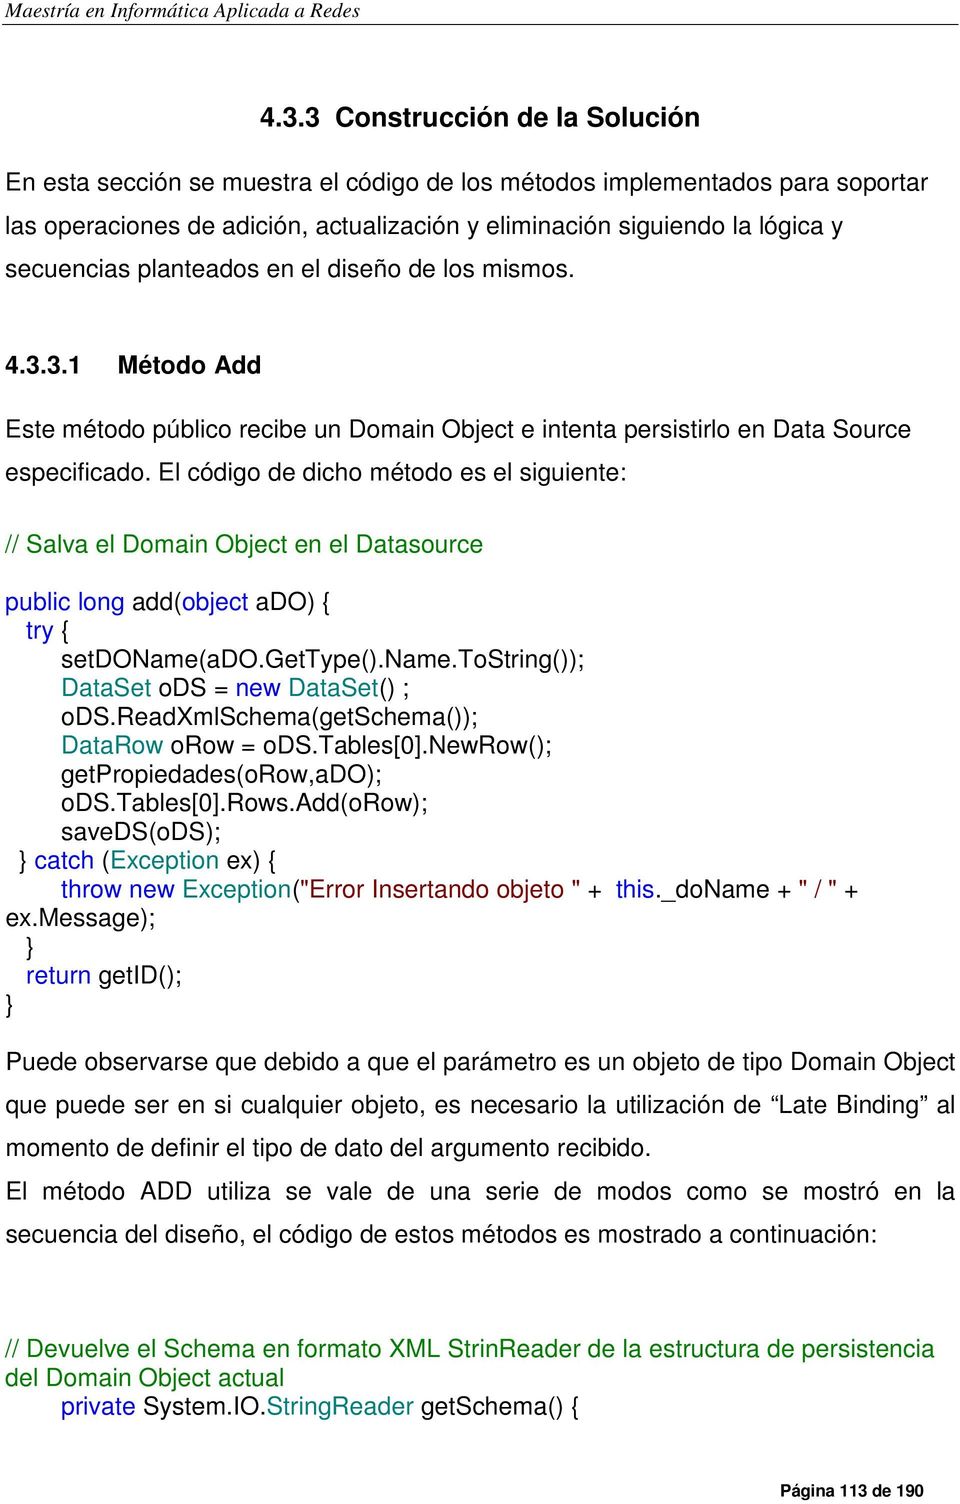 El código de dicho método es el siguiente: // Salva el Domain Object en el Datasource public long add(object ado) try setdoname(ado.gettype().name.tostring()); DataSet ods = new DataSet() ; ods.